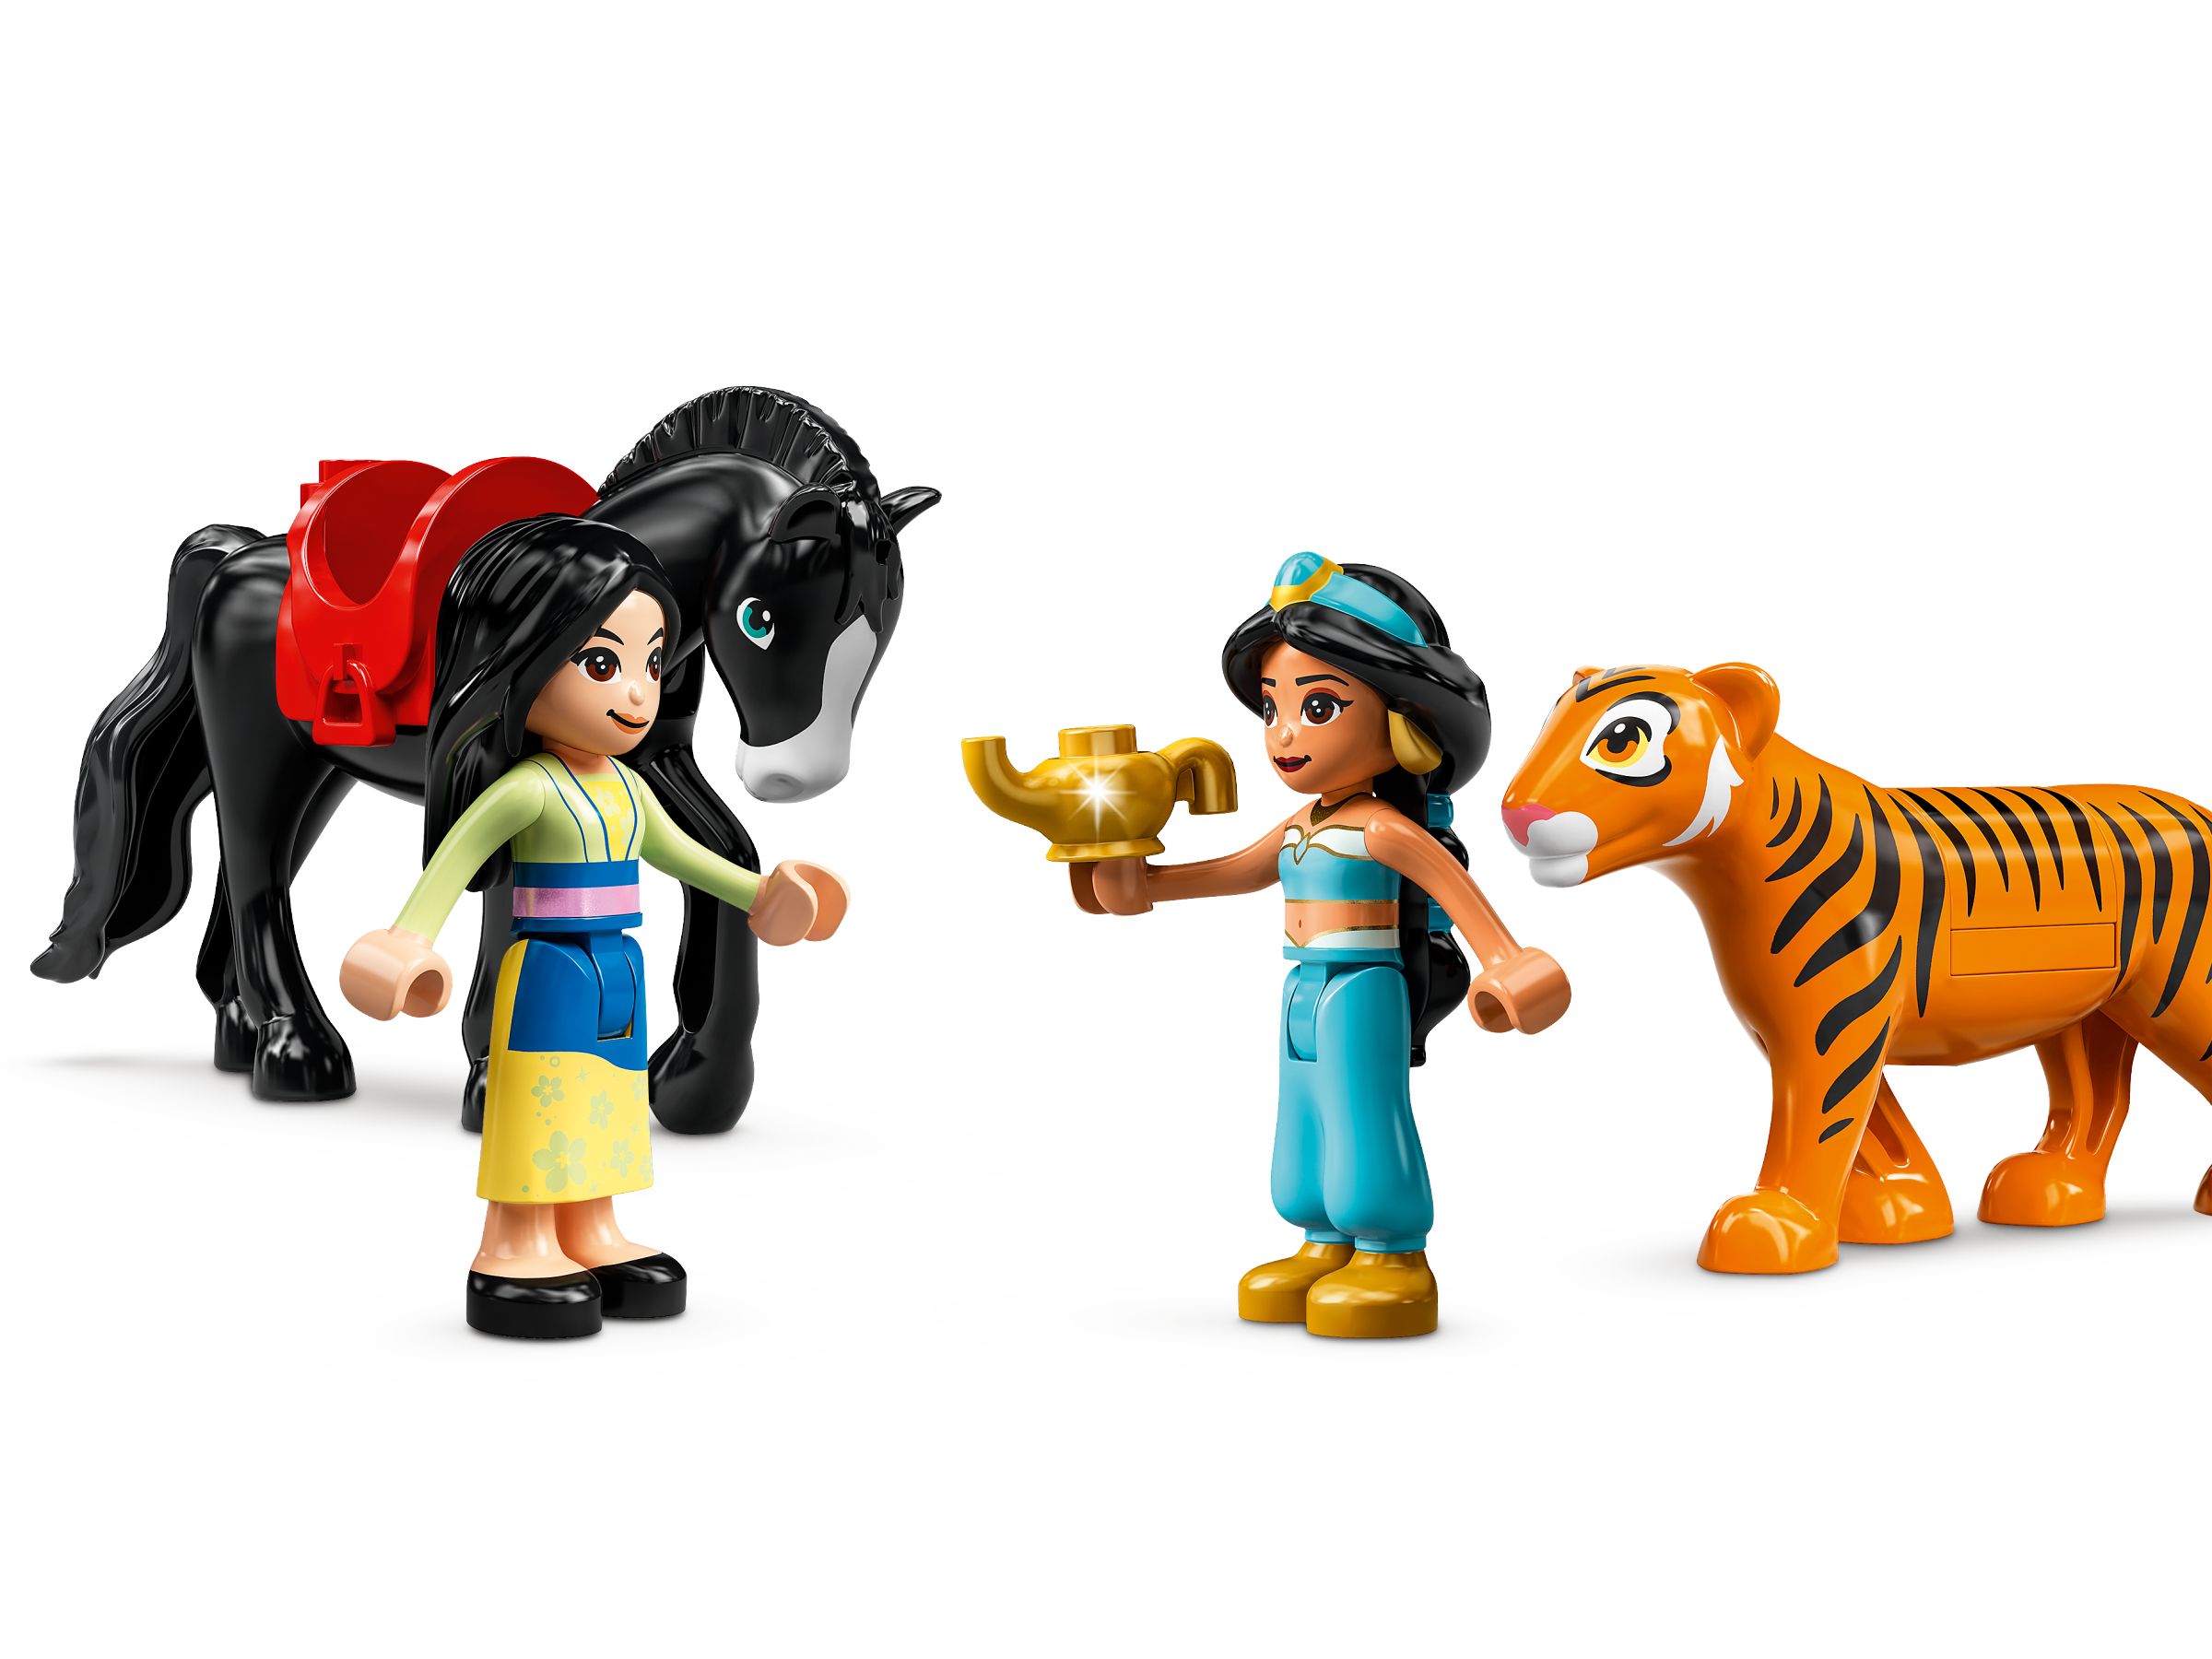 LEGO Disney 43208 Jasmins und Mulans Abenteuer LEGO_43208_alt4.jpg